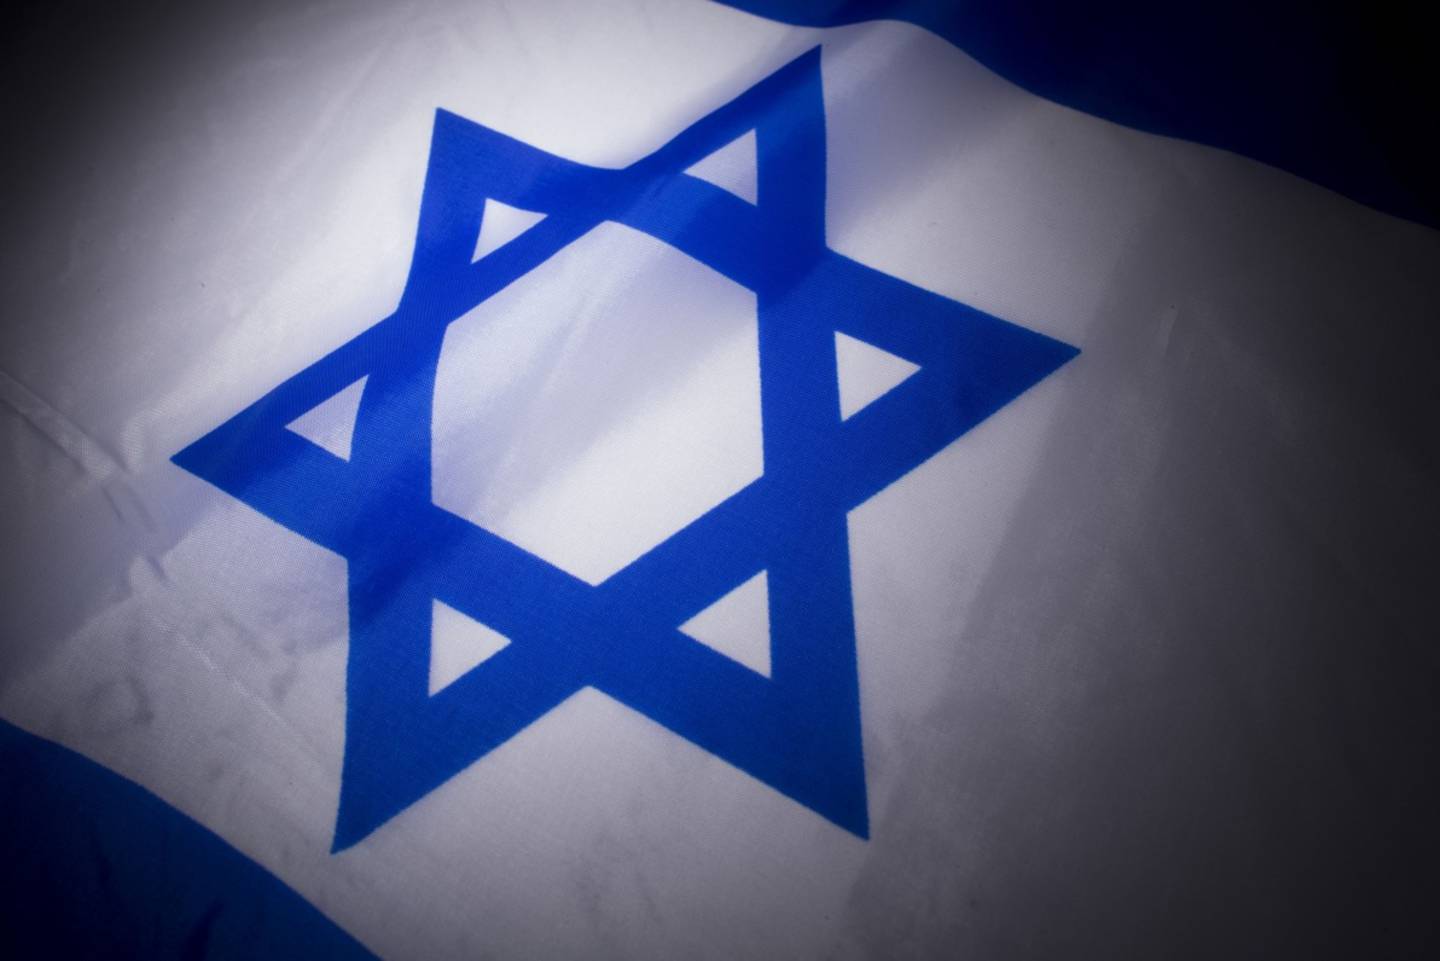 La bandera de Israel arreglada para fotografía en Nueva York, el miércoels 19 de febrero,2014.